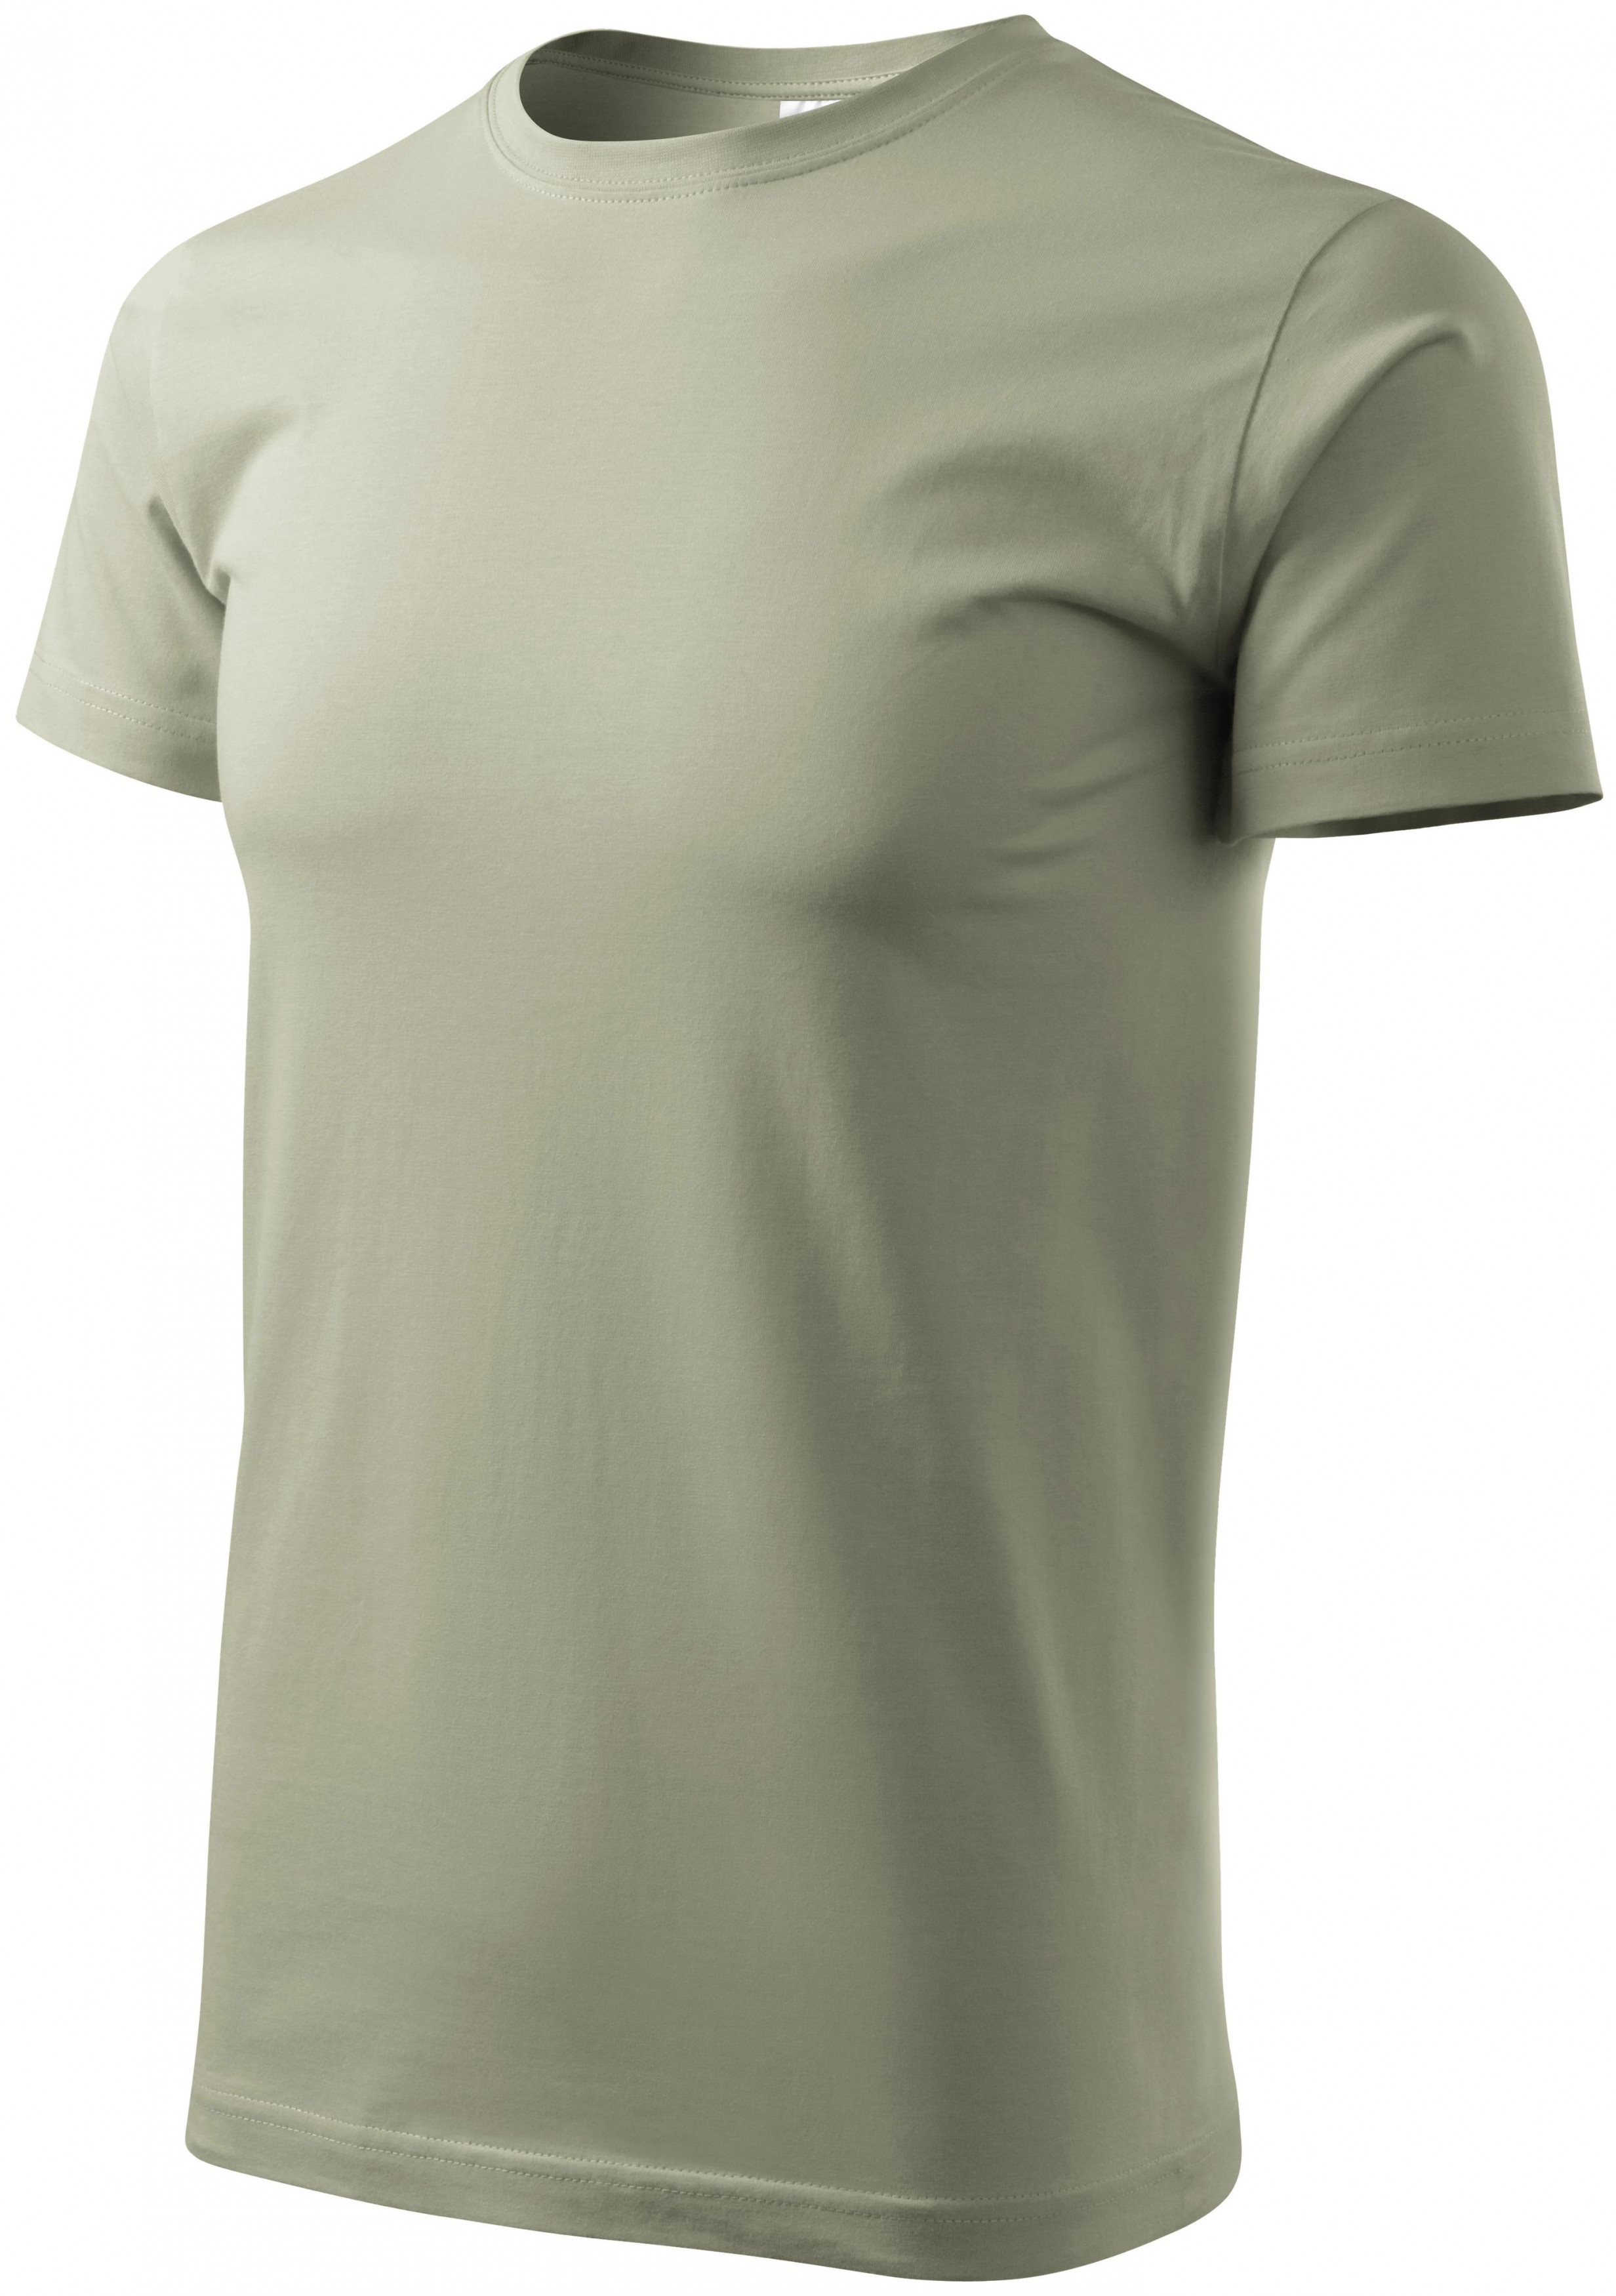 Pánske tričko jednoduché, svetlá khaki, M